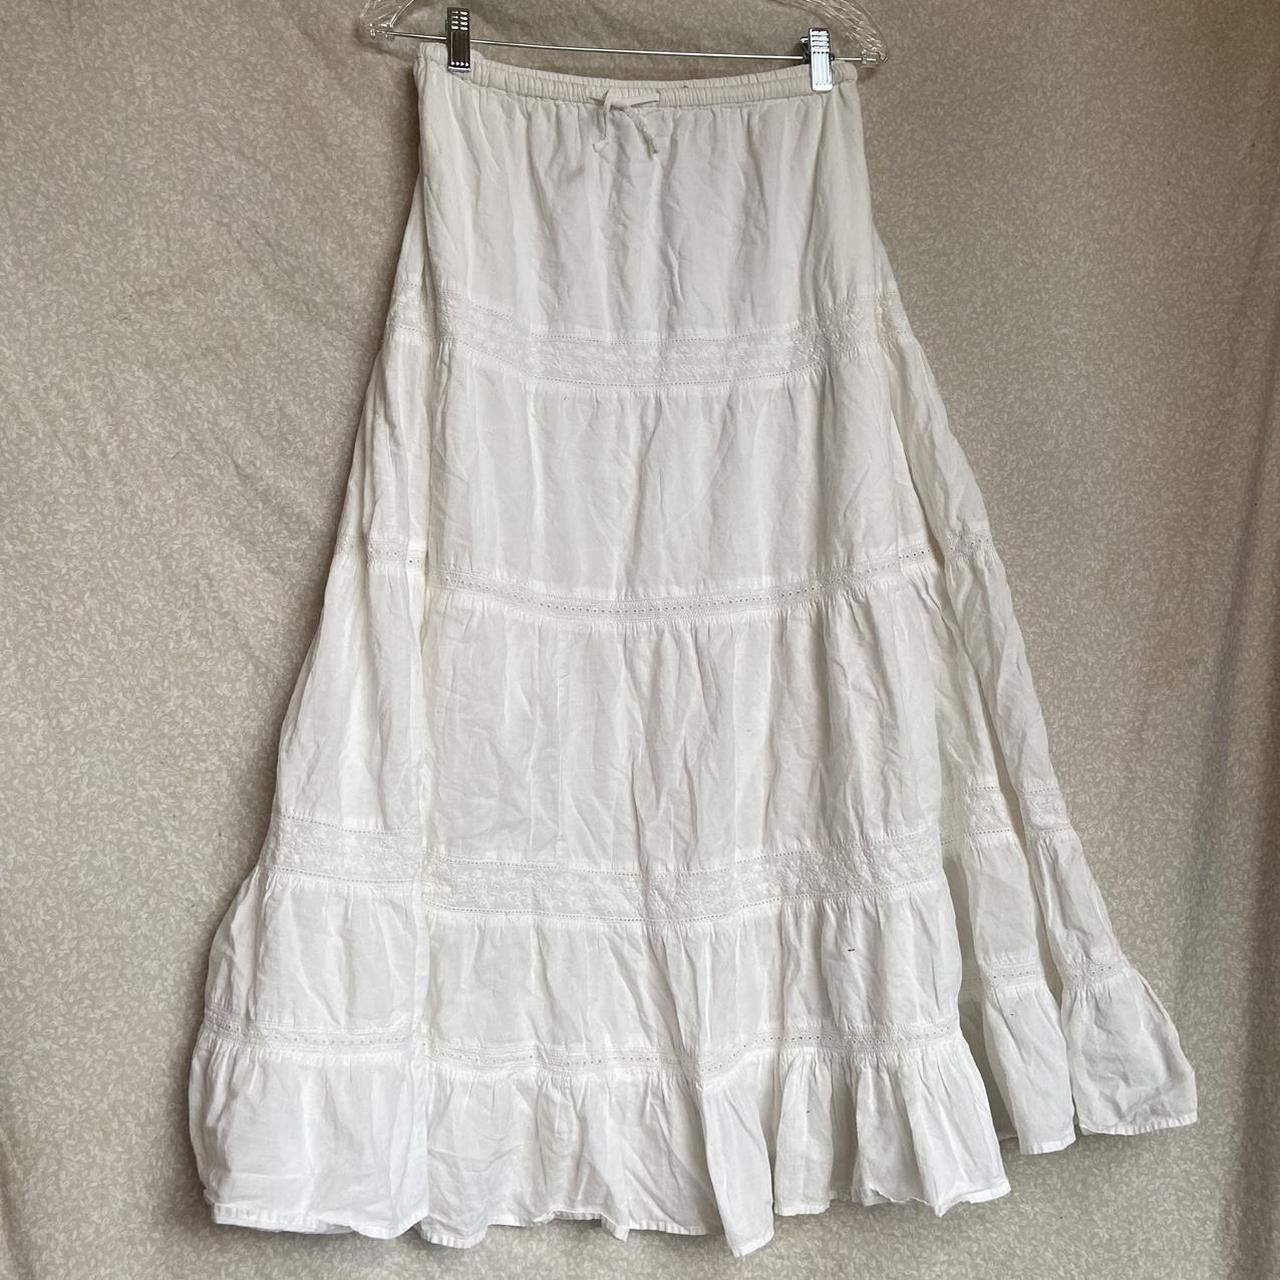 St. John’s bay white maxi skirt Drawstring... - Depop